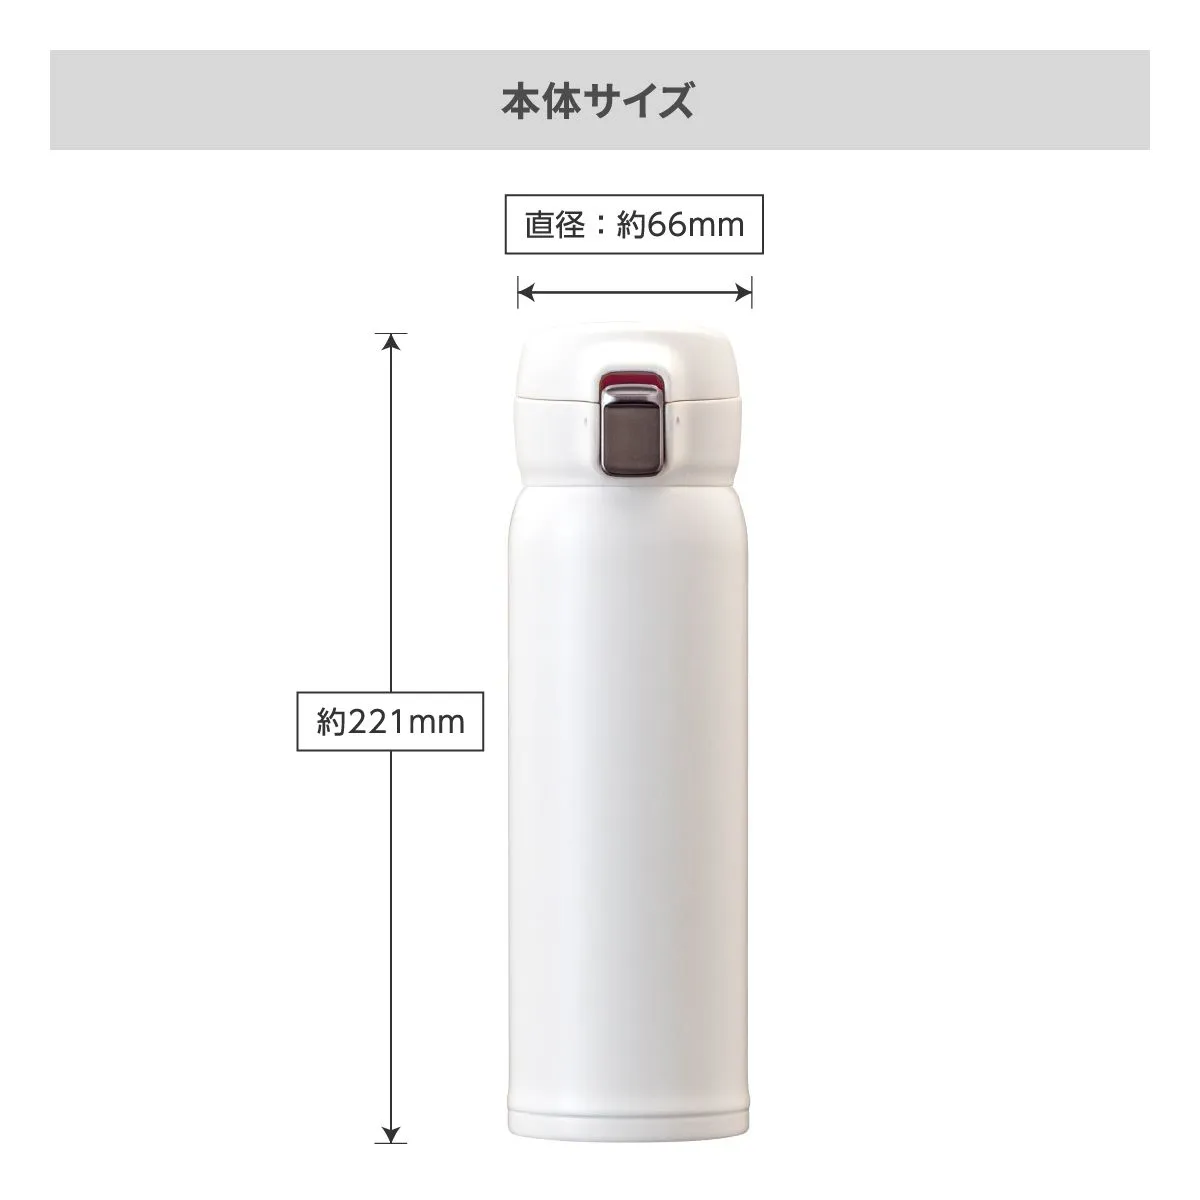 エアリスト 分解できる超軽量ワンタッチボトル 500ml【オリジナルステンレスボトル / 回転シルク印刷】 画像6